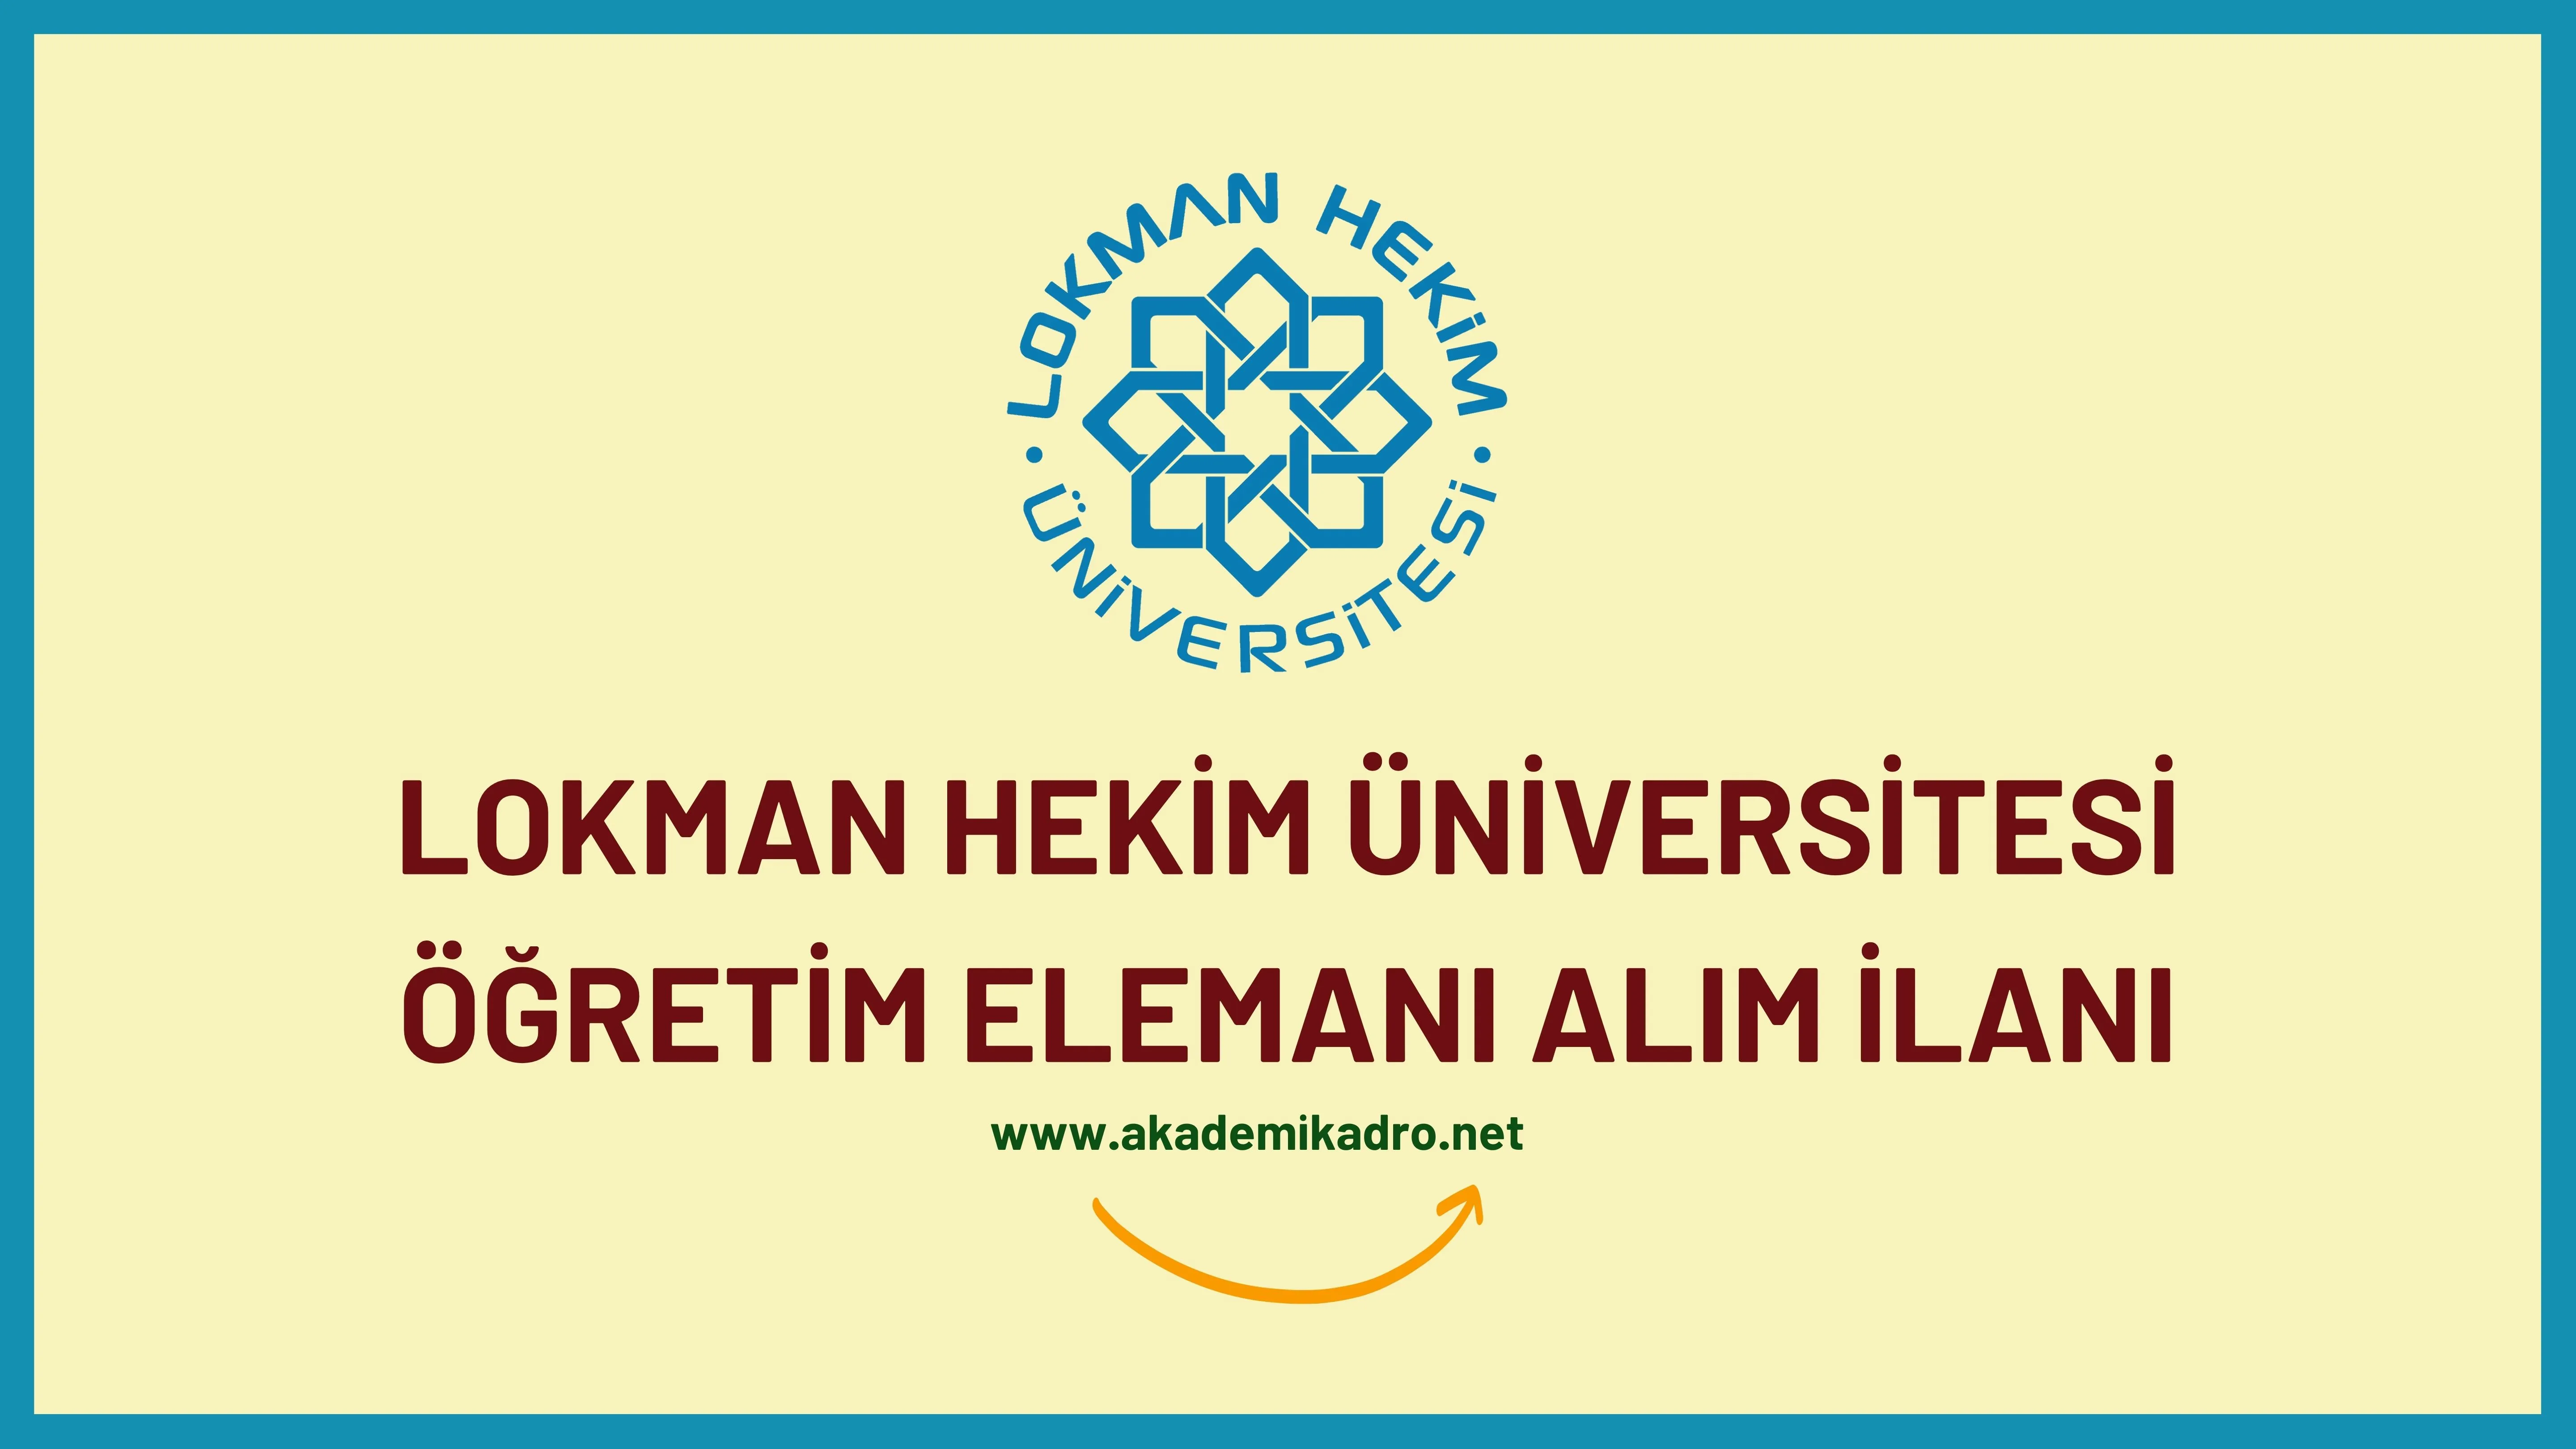 Lokman Hekim Üniversitesi 11 Öğretim görevlisi, 3 Araştırma görevlisi ve 24 öğretim üyesi alacaktır.